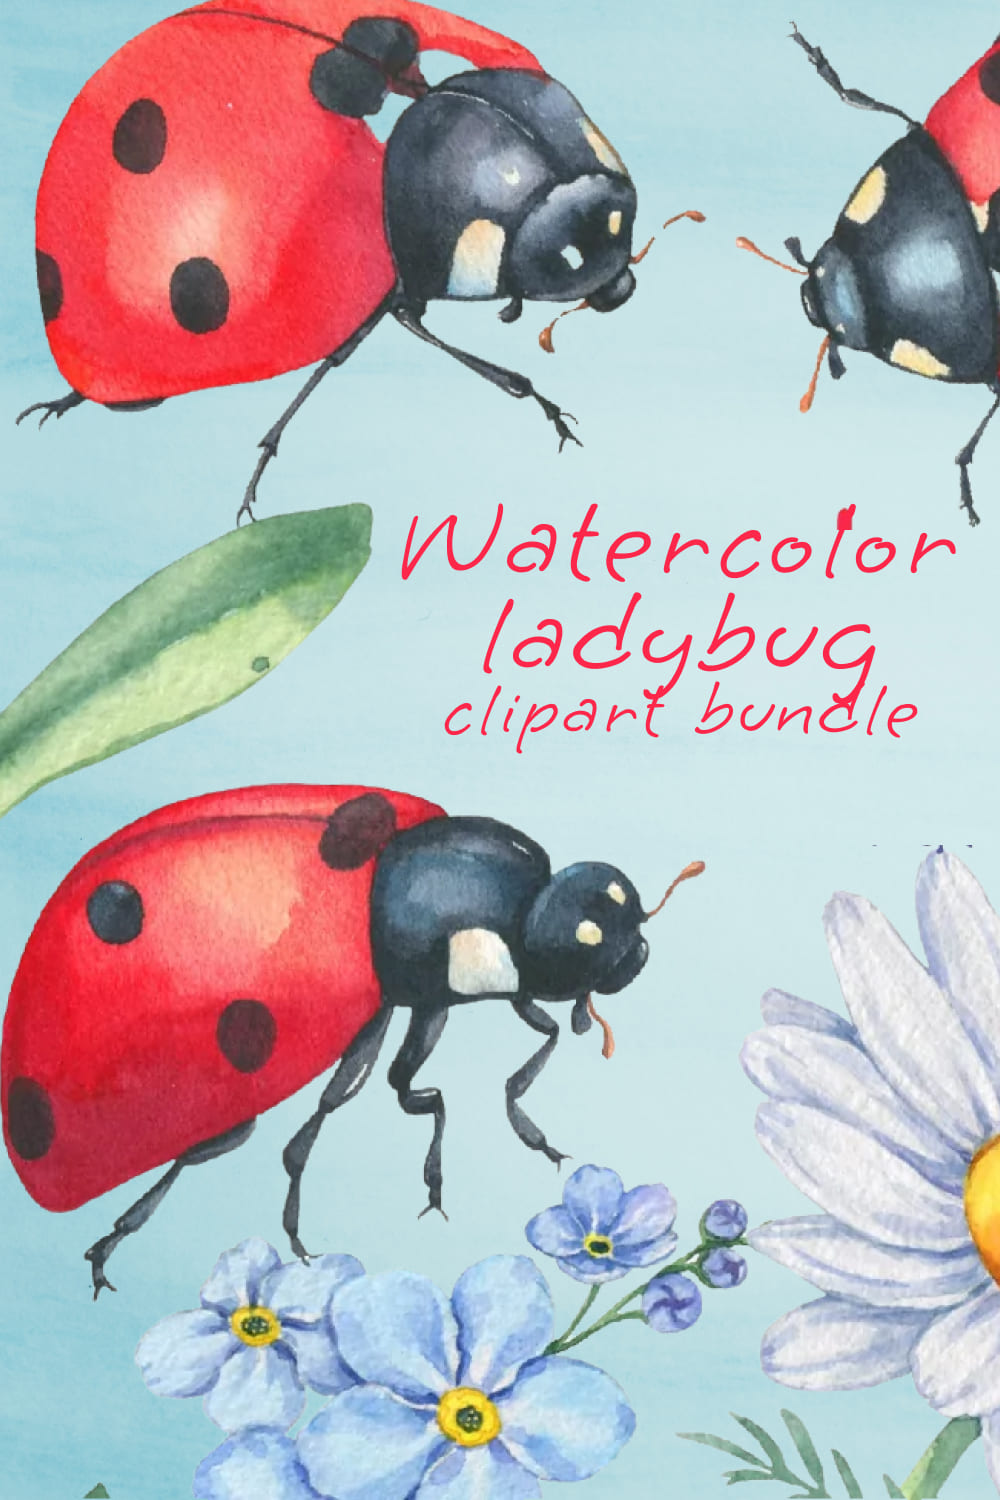 Watercolor ladybug clipart bundle - pinterest image preview.